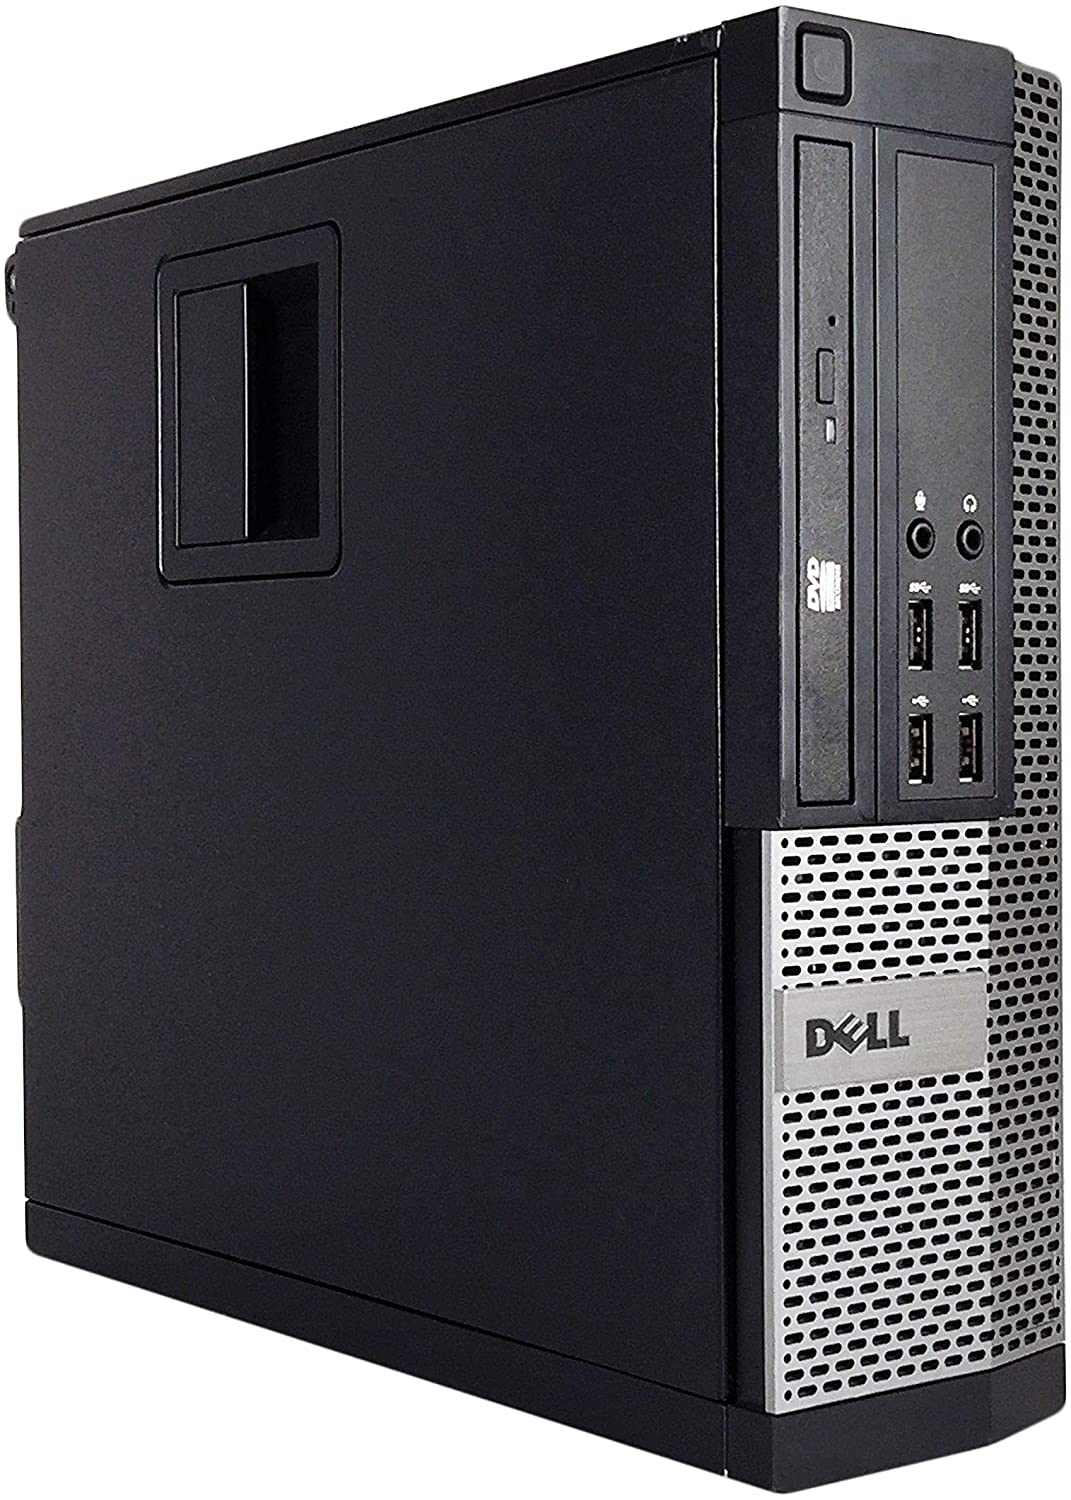 Dell 9020 SFF Business Desktop Mini Tower(Core i7-4790,8GB Ram,240GB SSD,WIFI,DVDRW)Win10Pro Renewed